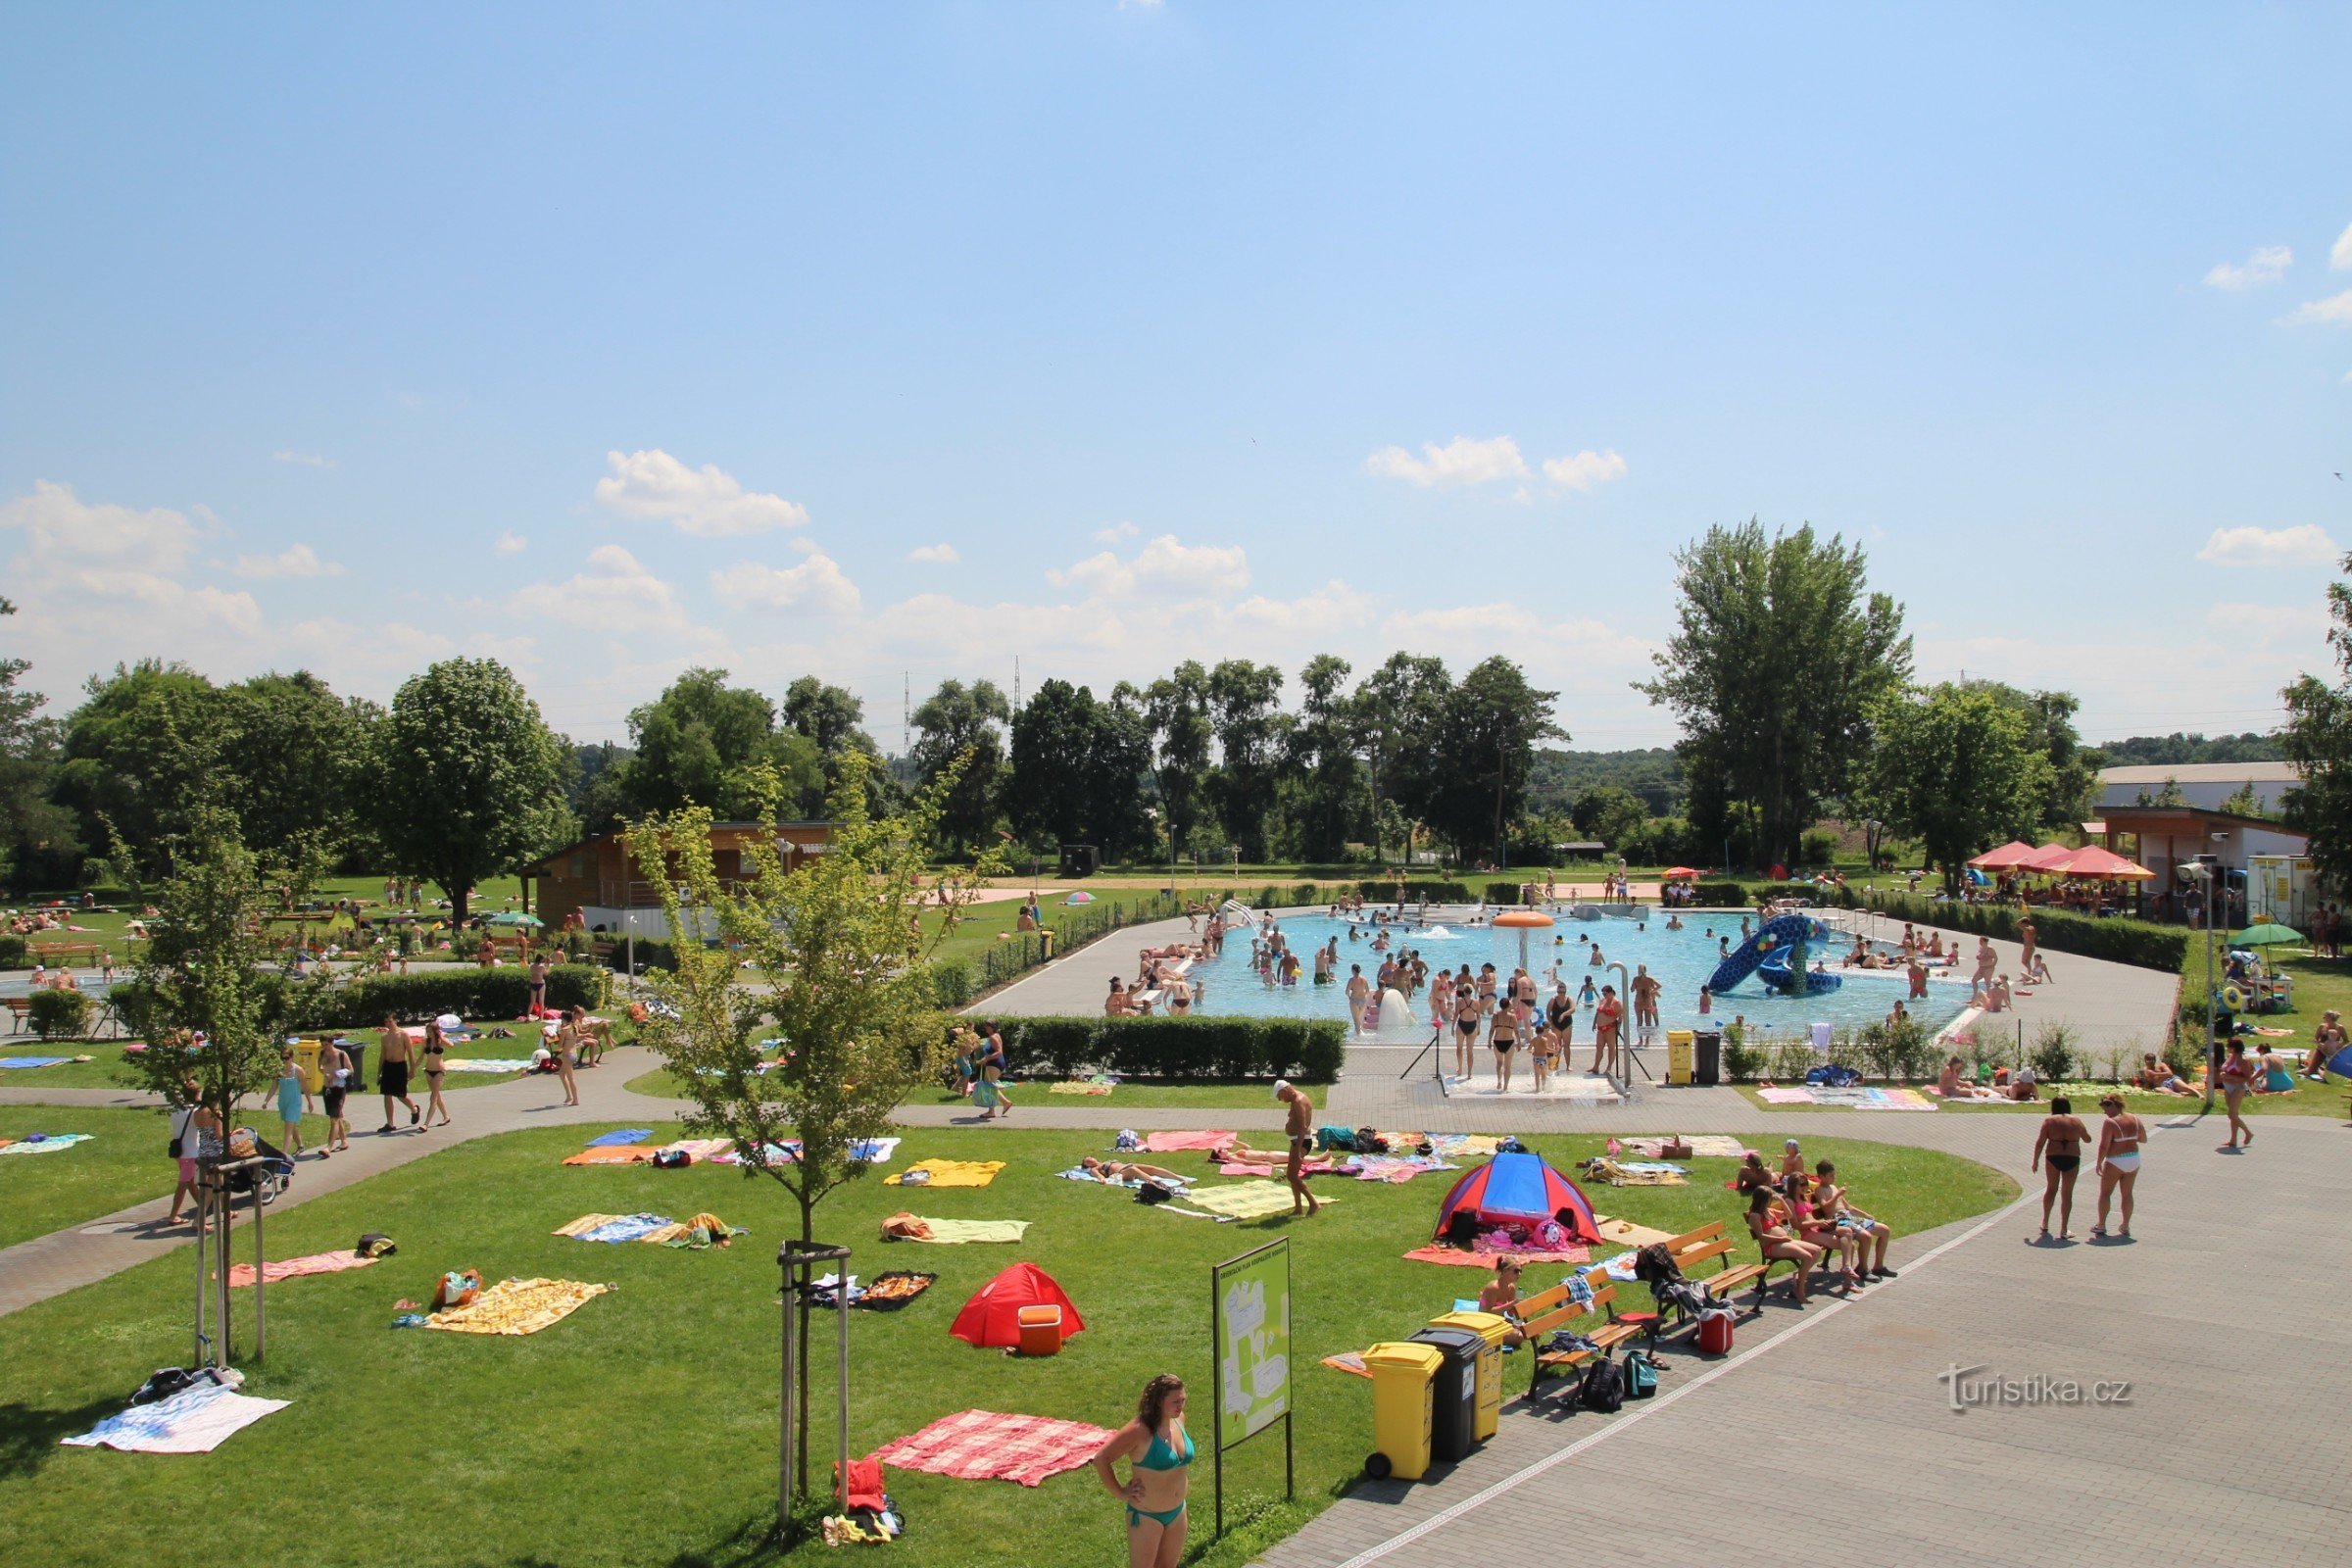 Hodonín - Summer swimming pool